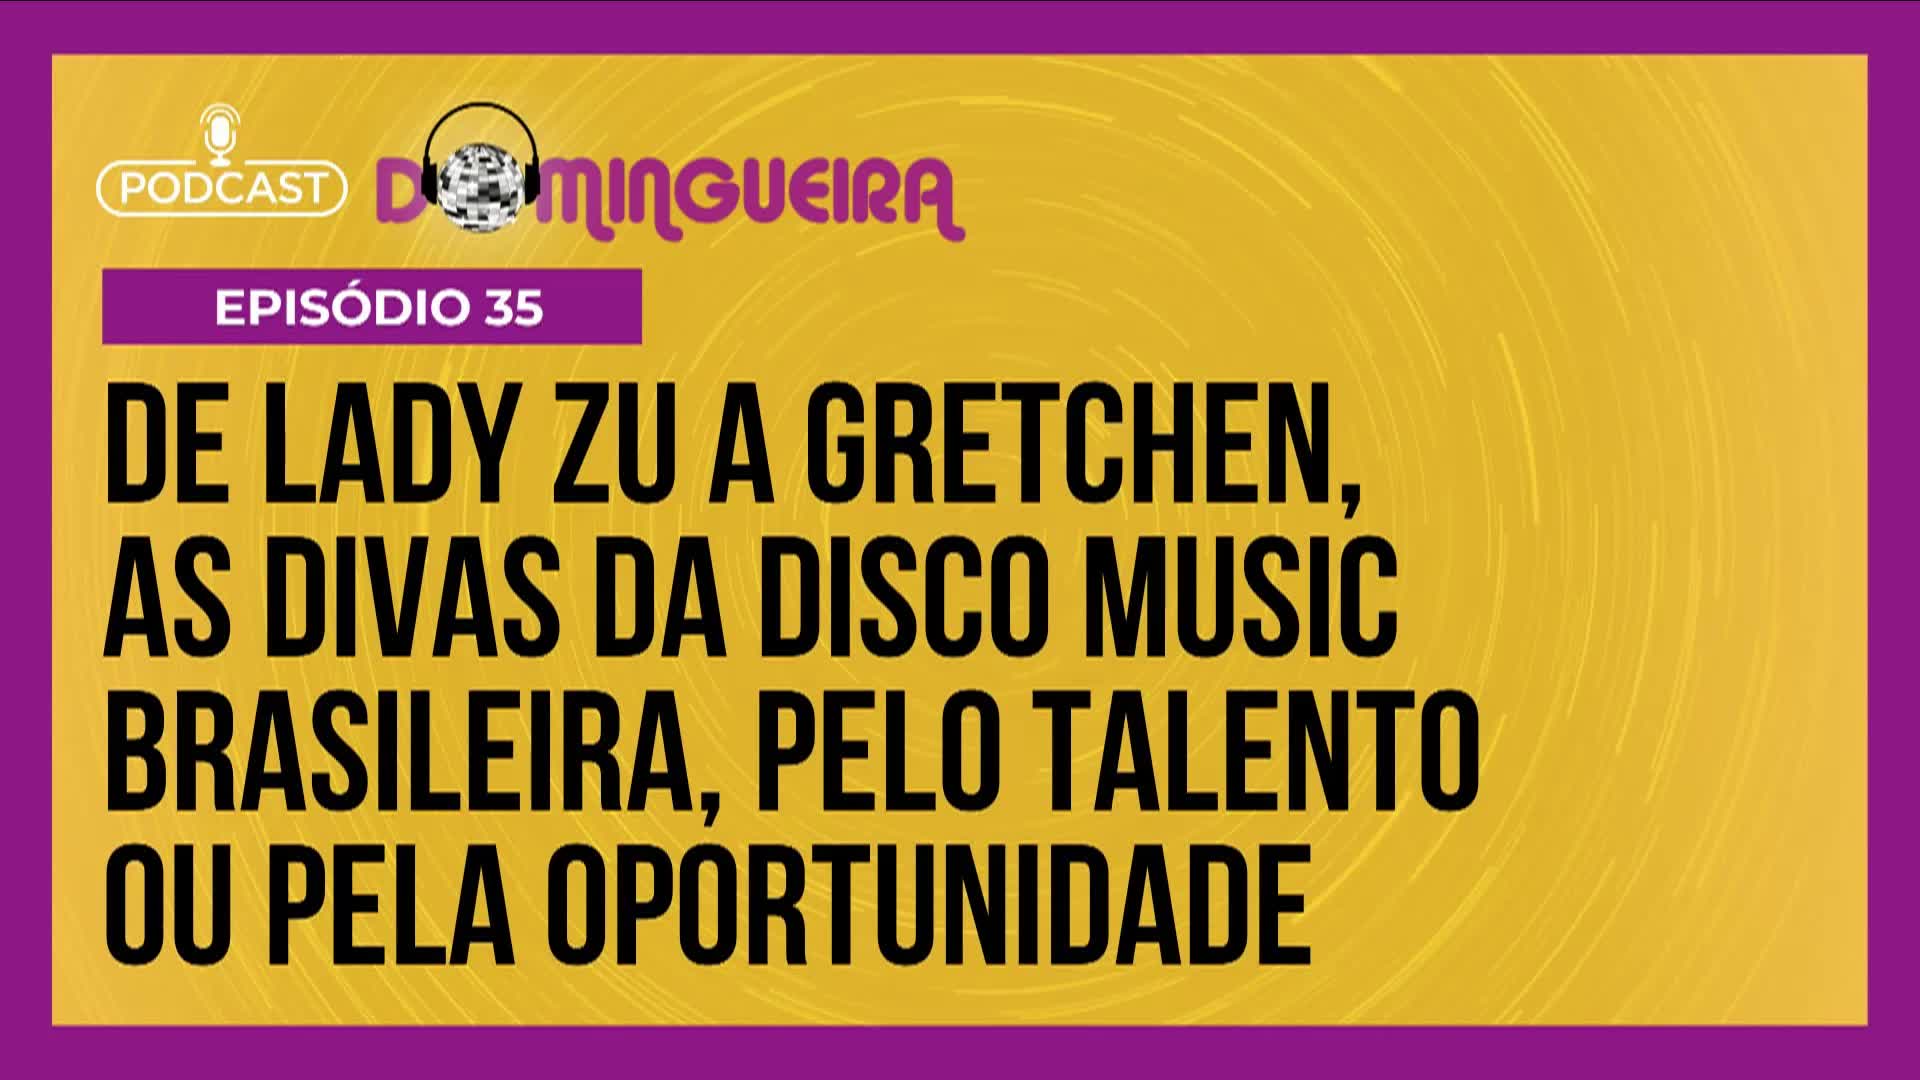 Podcast Domingueira : Disco Music Brasil teve divas de muito talento e também ‘criações de estúdio’